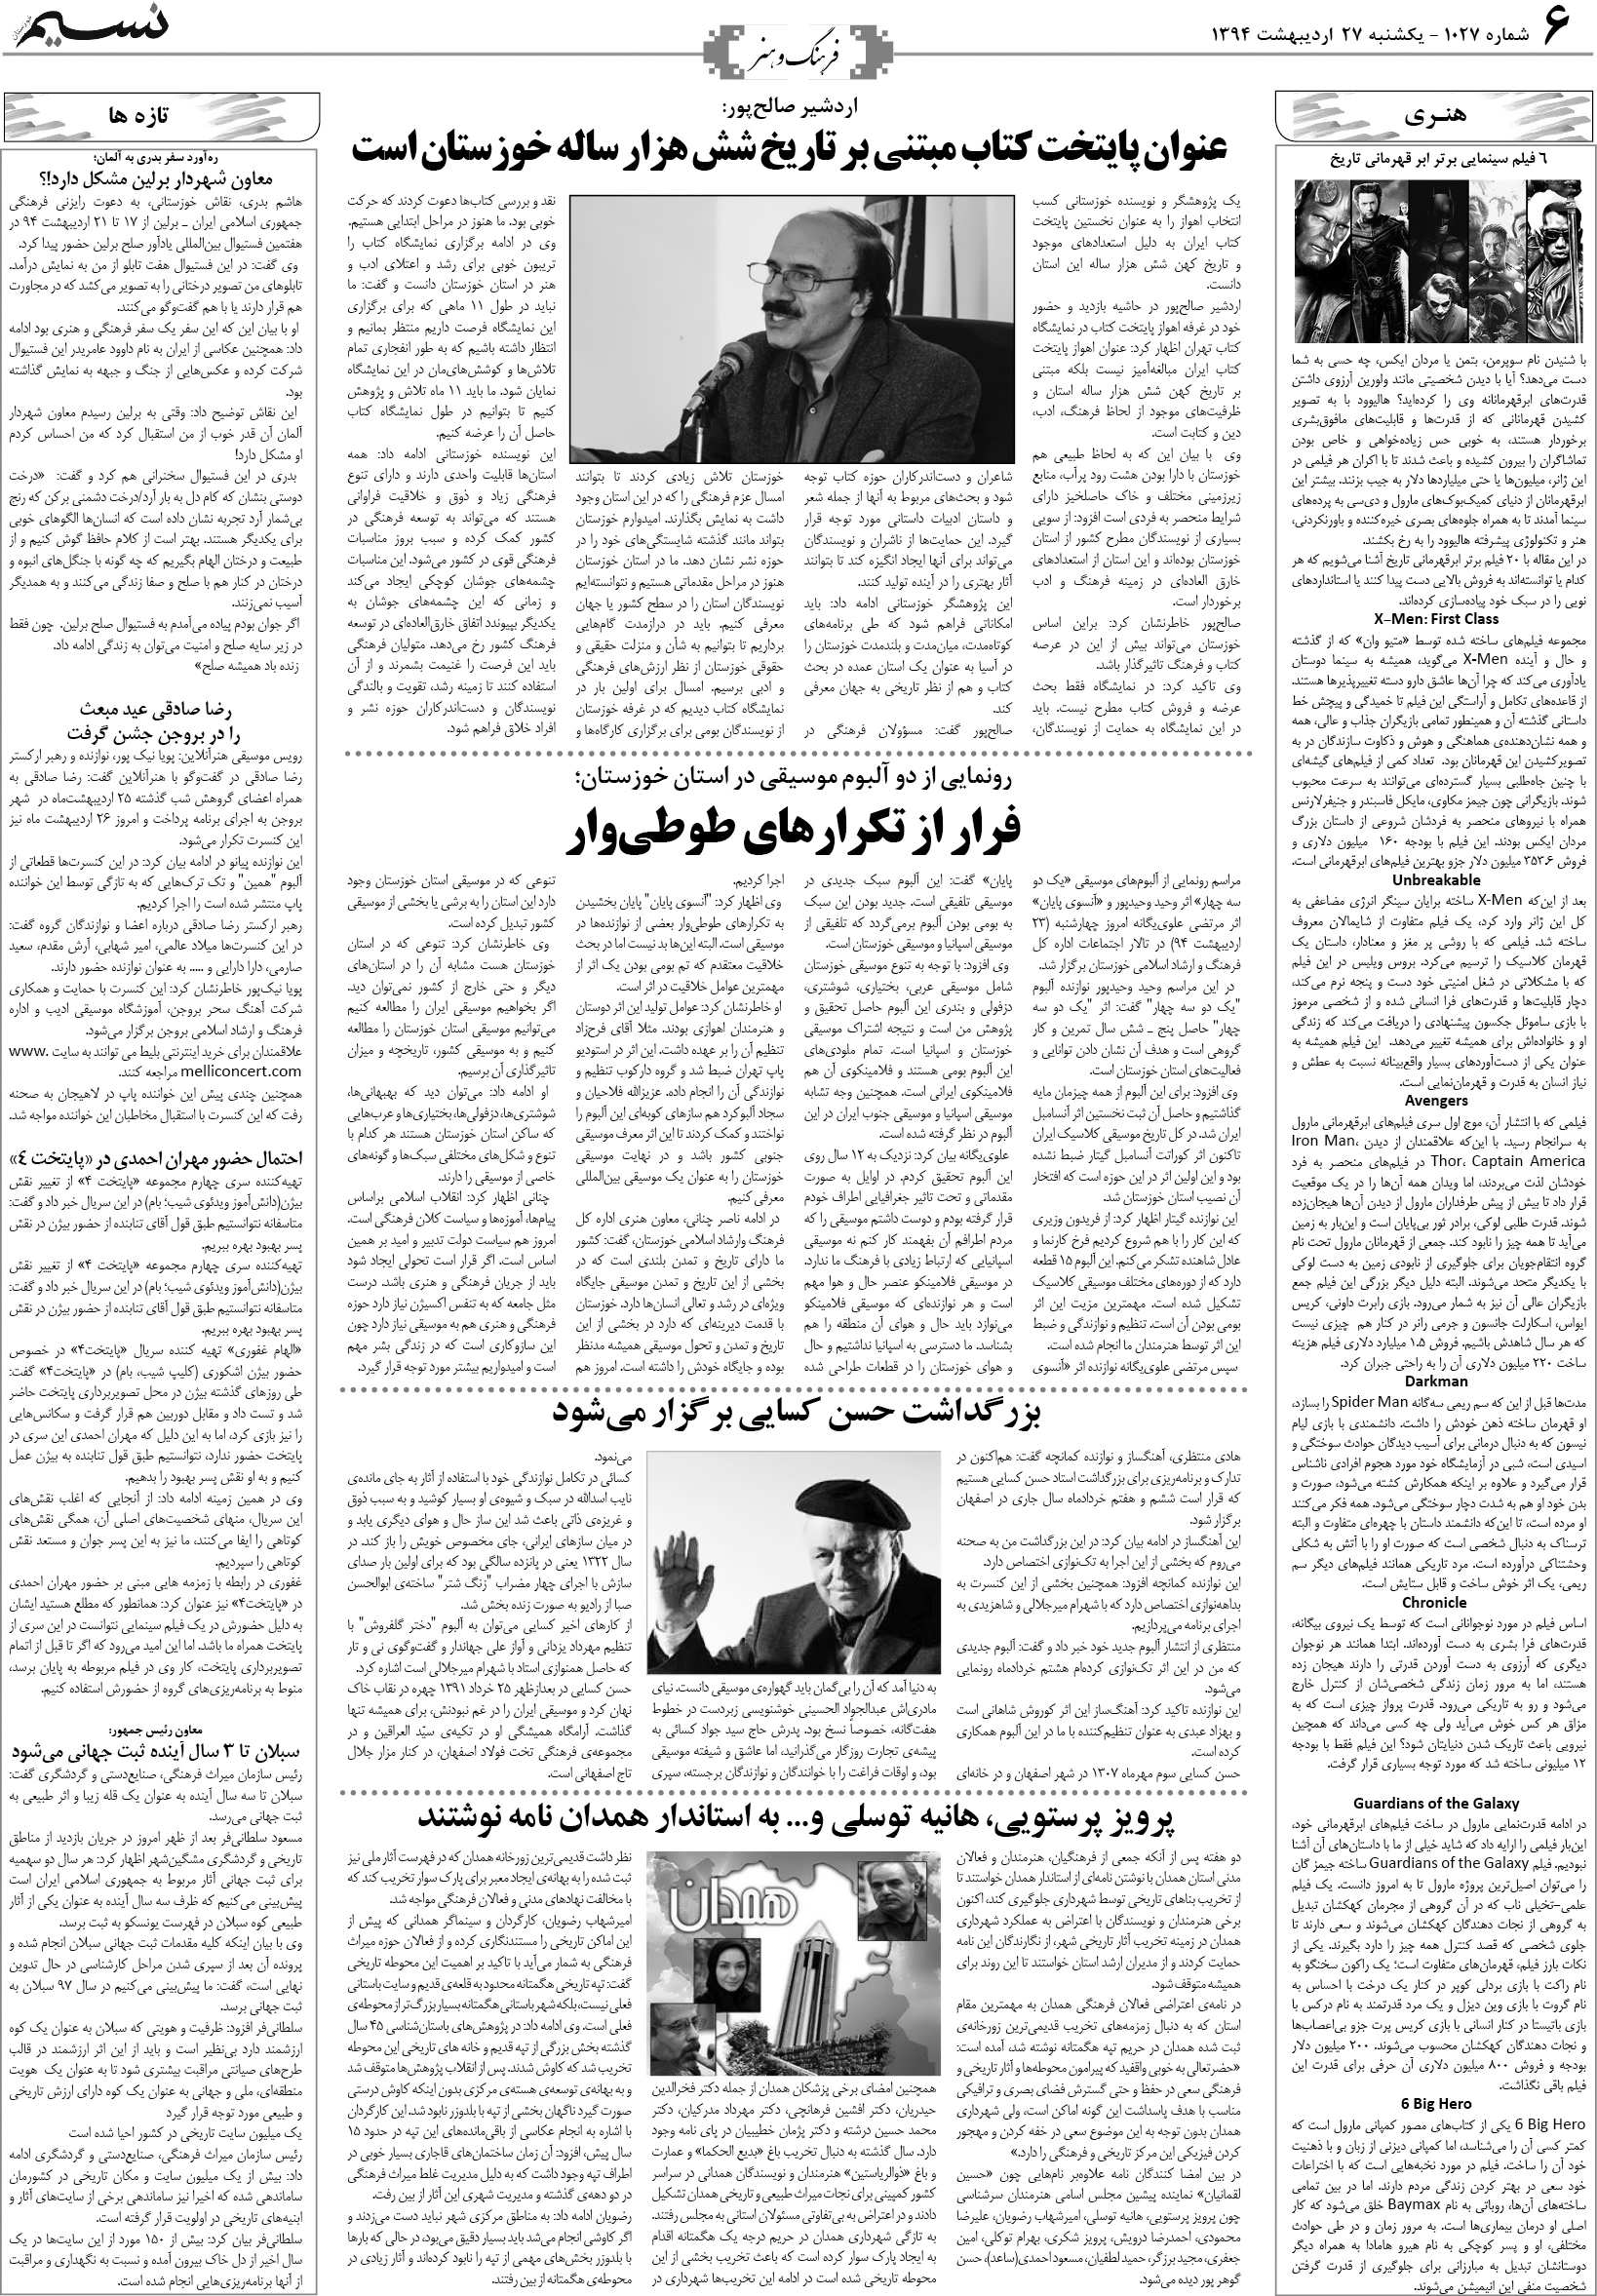 صفحه فرهنگ و هنر روزنامه نسیم شماره 1027